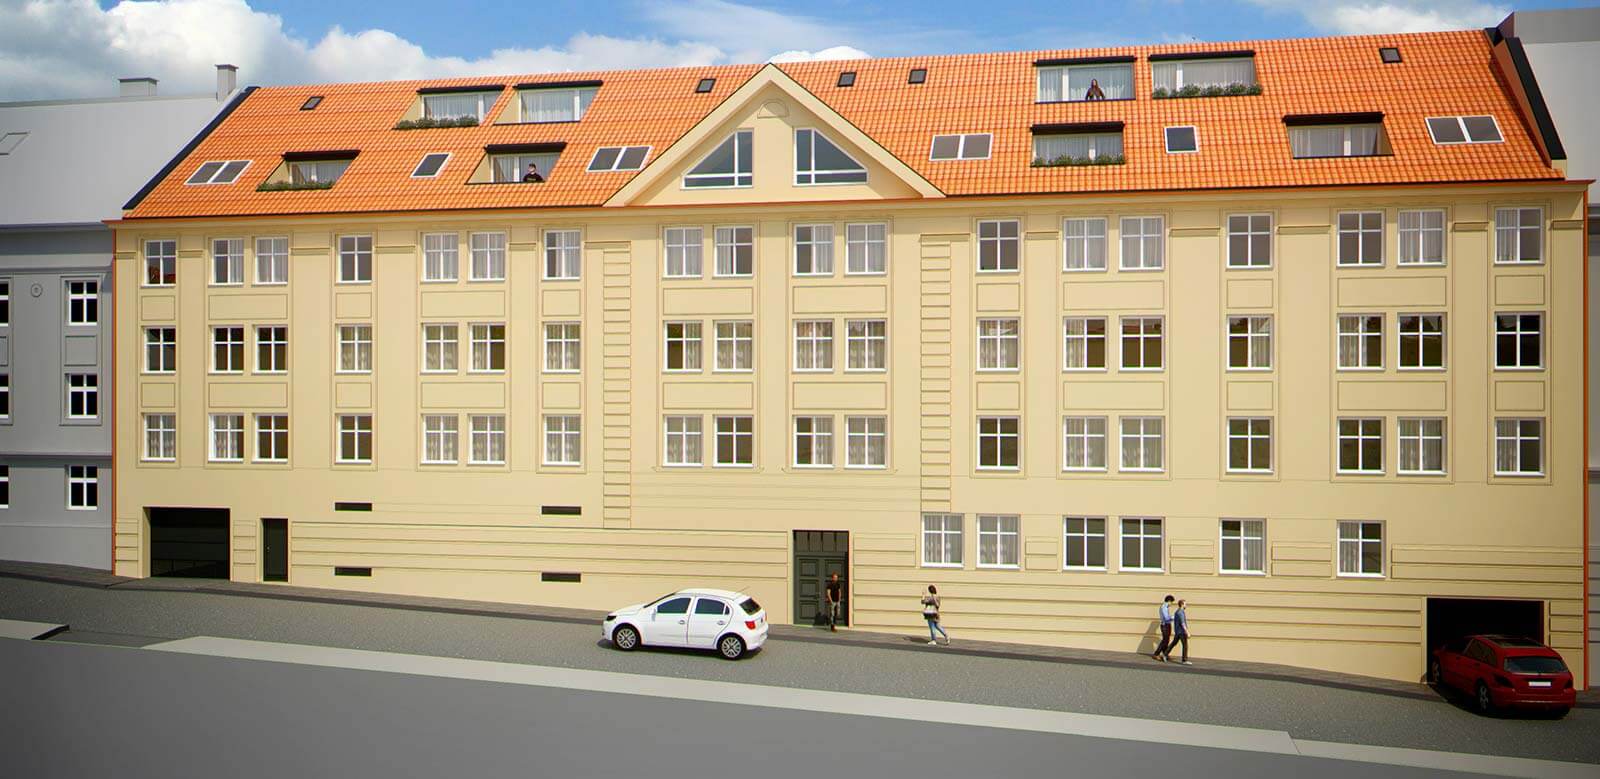 Predané: Novostavba 2 izbový byt, širšie centrum v Bratislave, Beskydská ulica, 56,85m2, štandard.-7